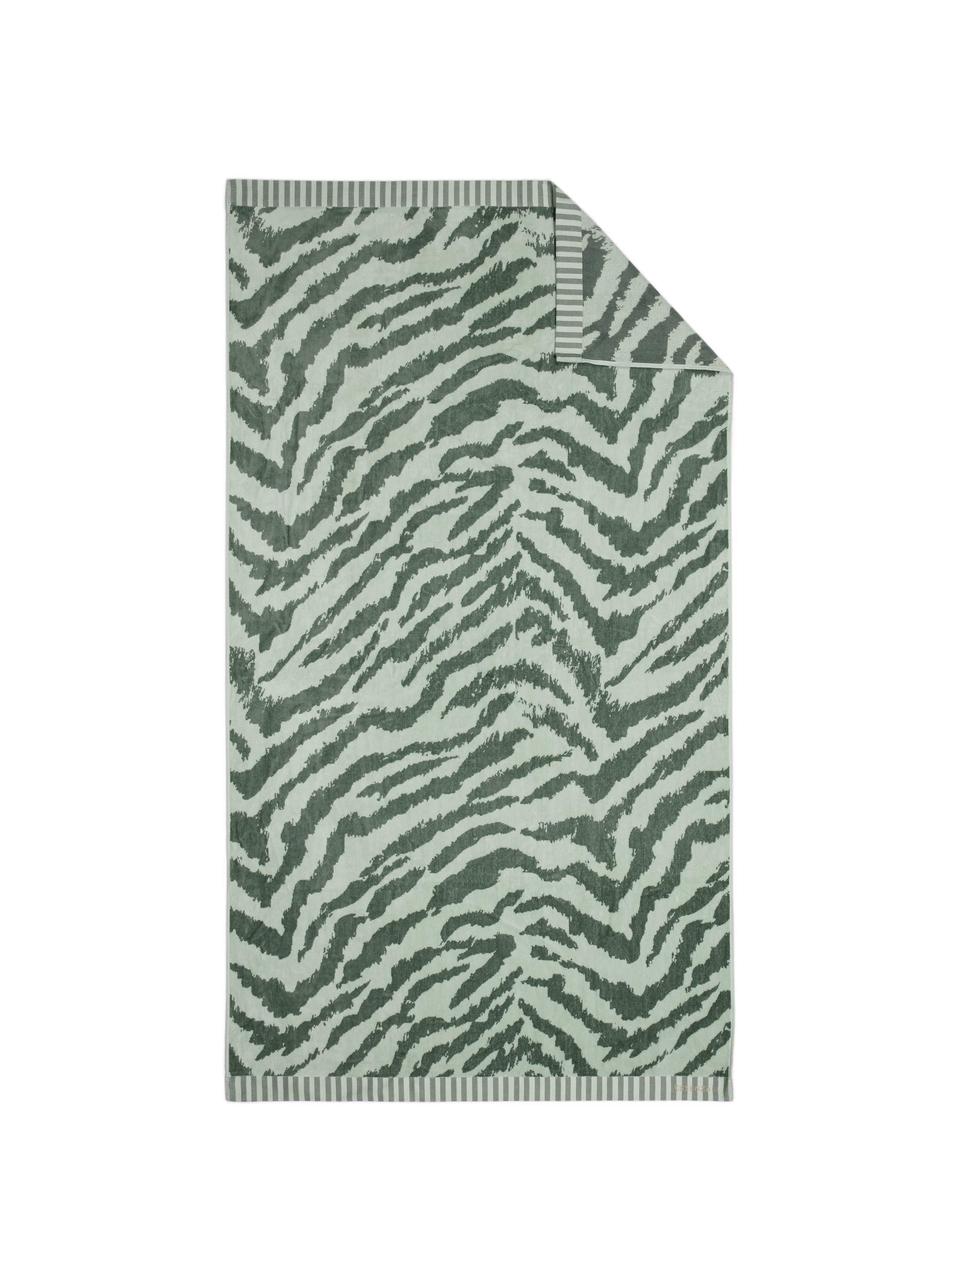 Strandlaken Belen met zebrapatroon in groen, Lichtgroen, donkergroen, 100 x 180 cm